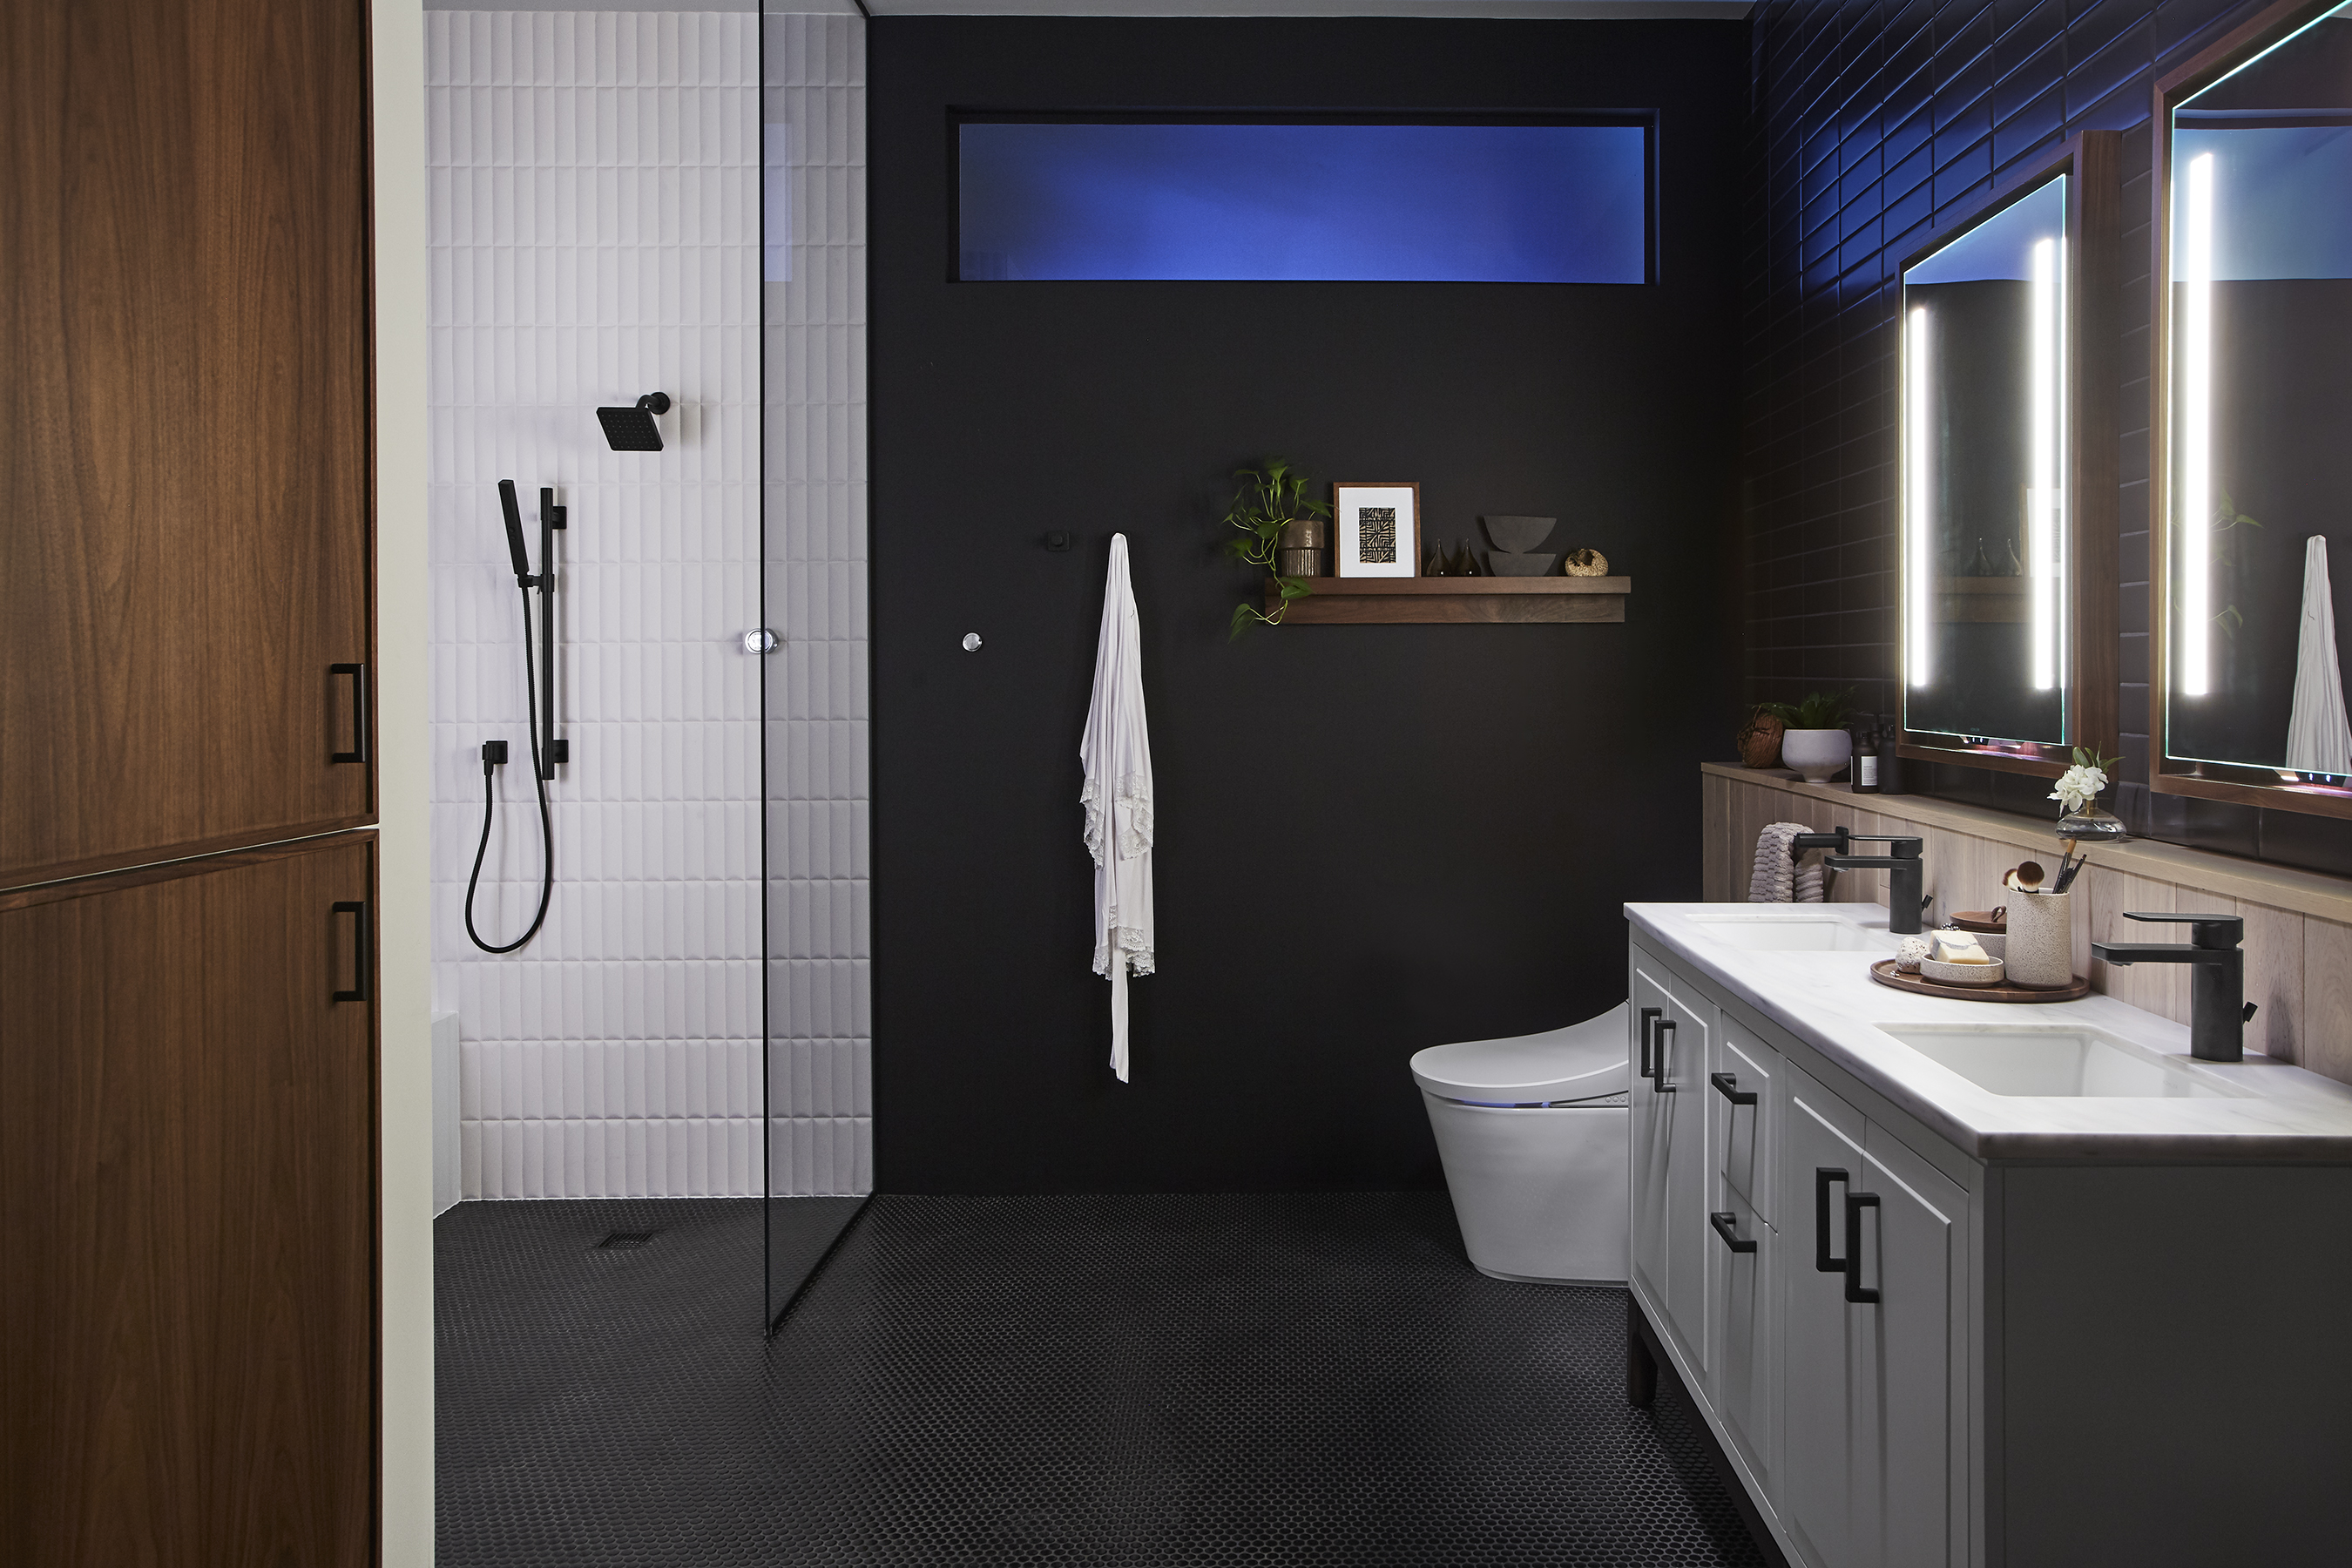 https://www.residentialproductsonline.com/sites/rpo/files/Kohler-Smart-Bathroom-Black-Walls-White-Tiles.jpg